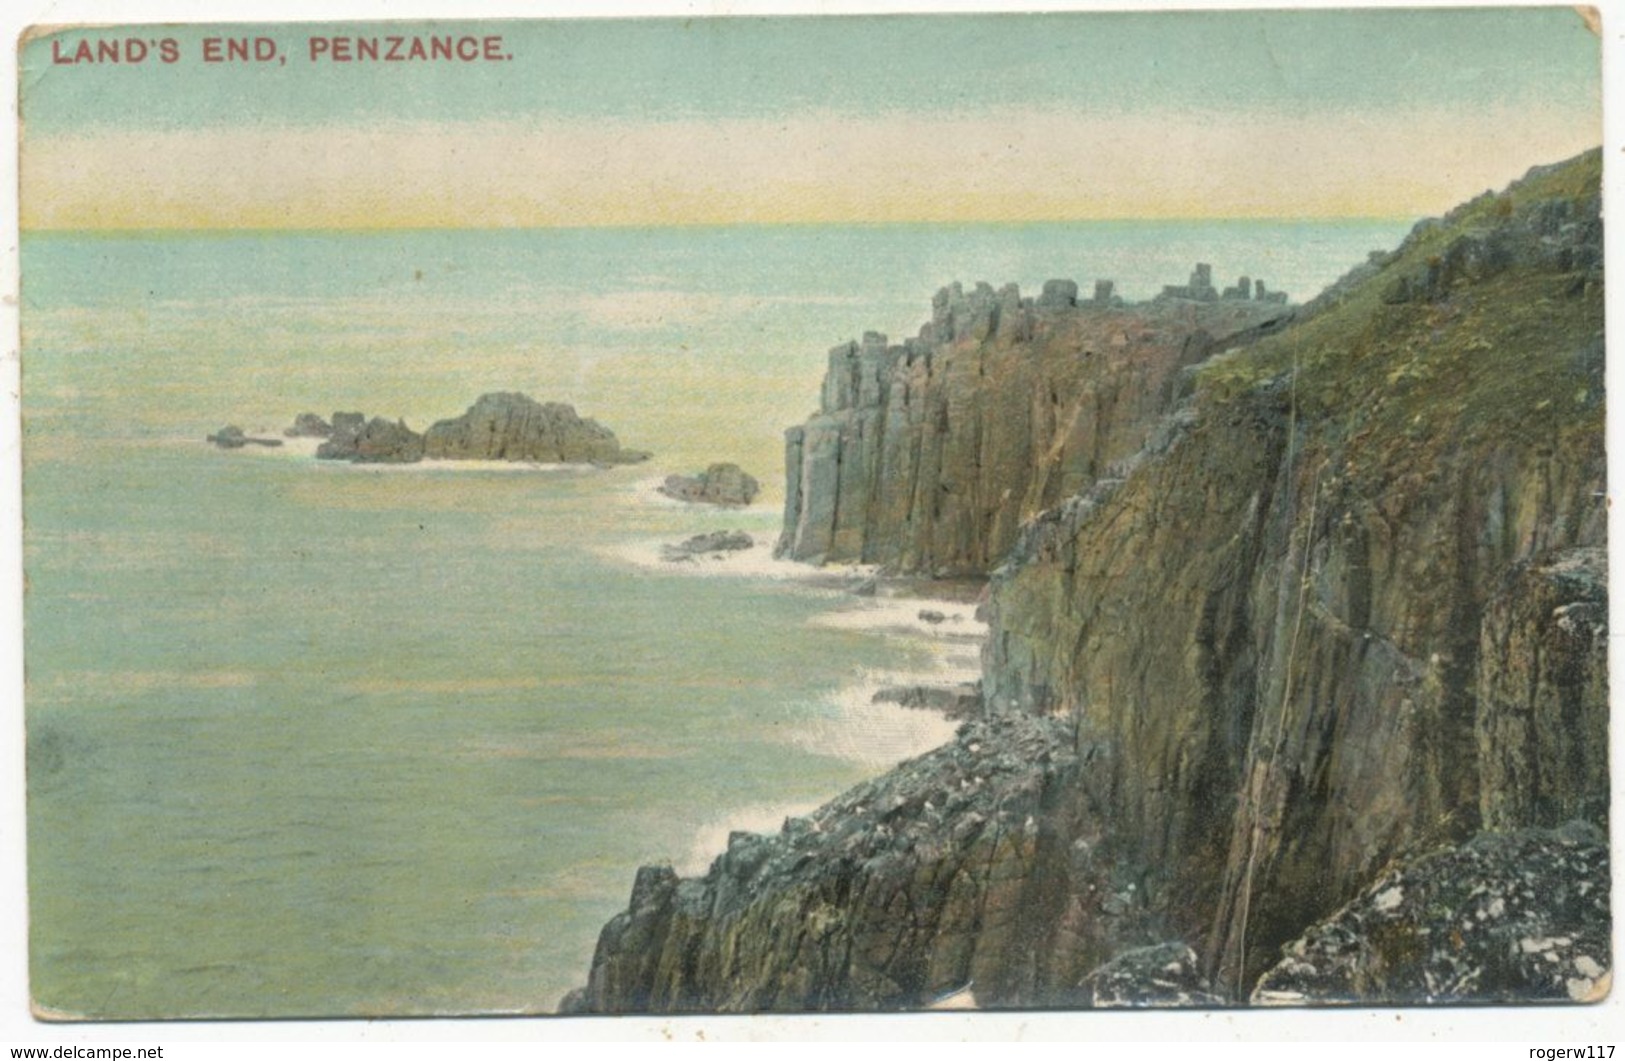 Land's End, Penzance, 1907 Postcard - Land's End